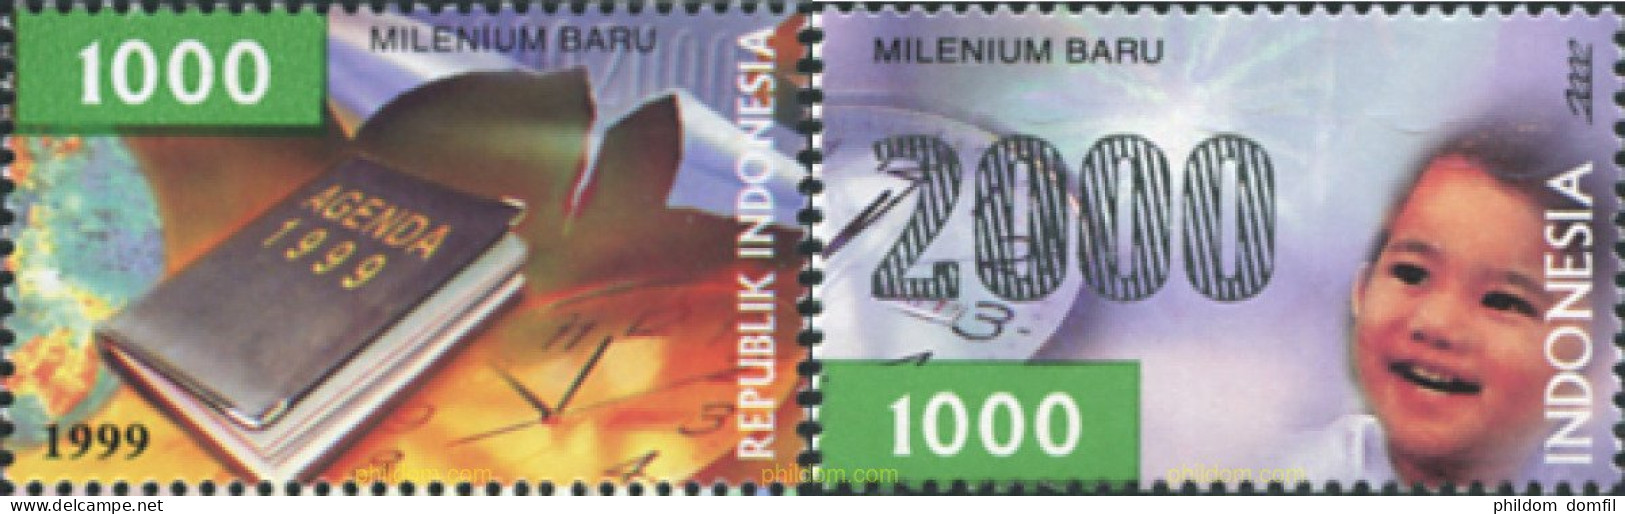 601866 MNH INDONESIA 1999 CELEBRACION DEL AÑO 2000 - Indonesia